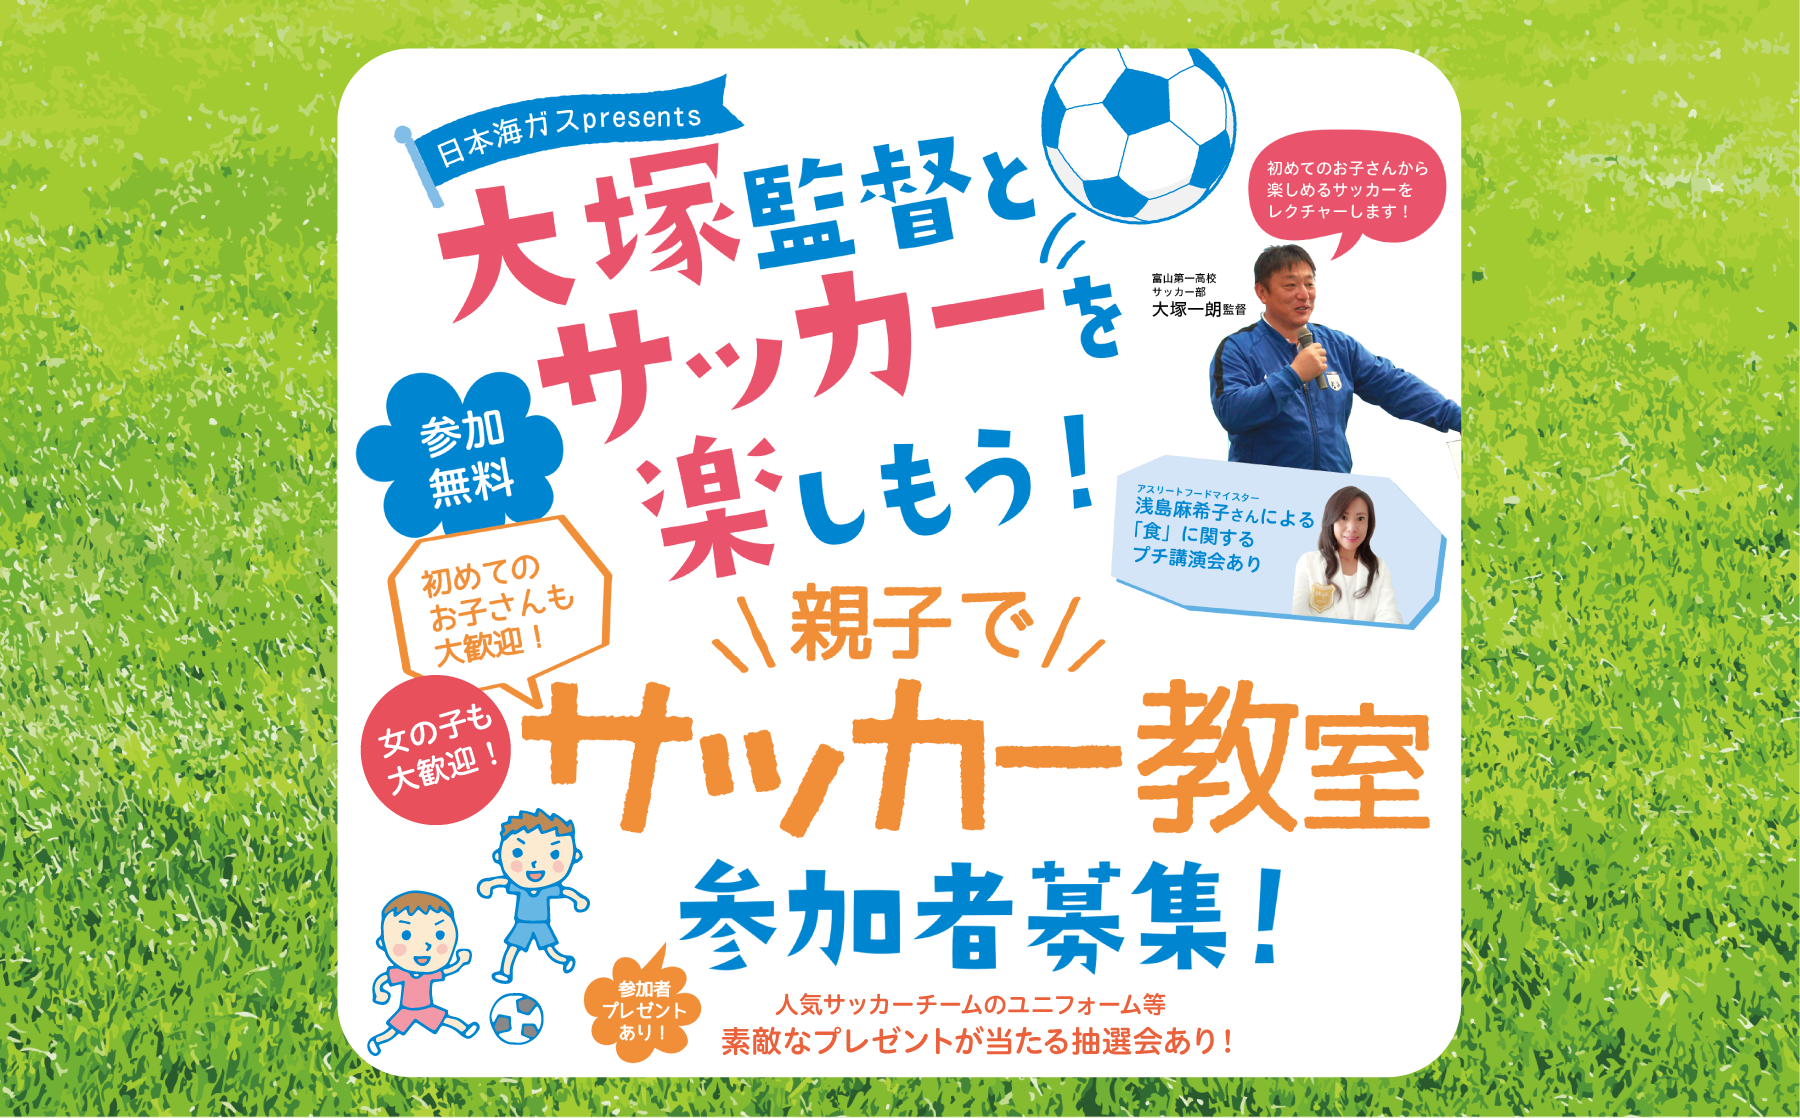 大塚監督とサッカーを楽しもう！